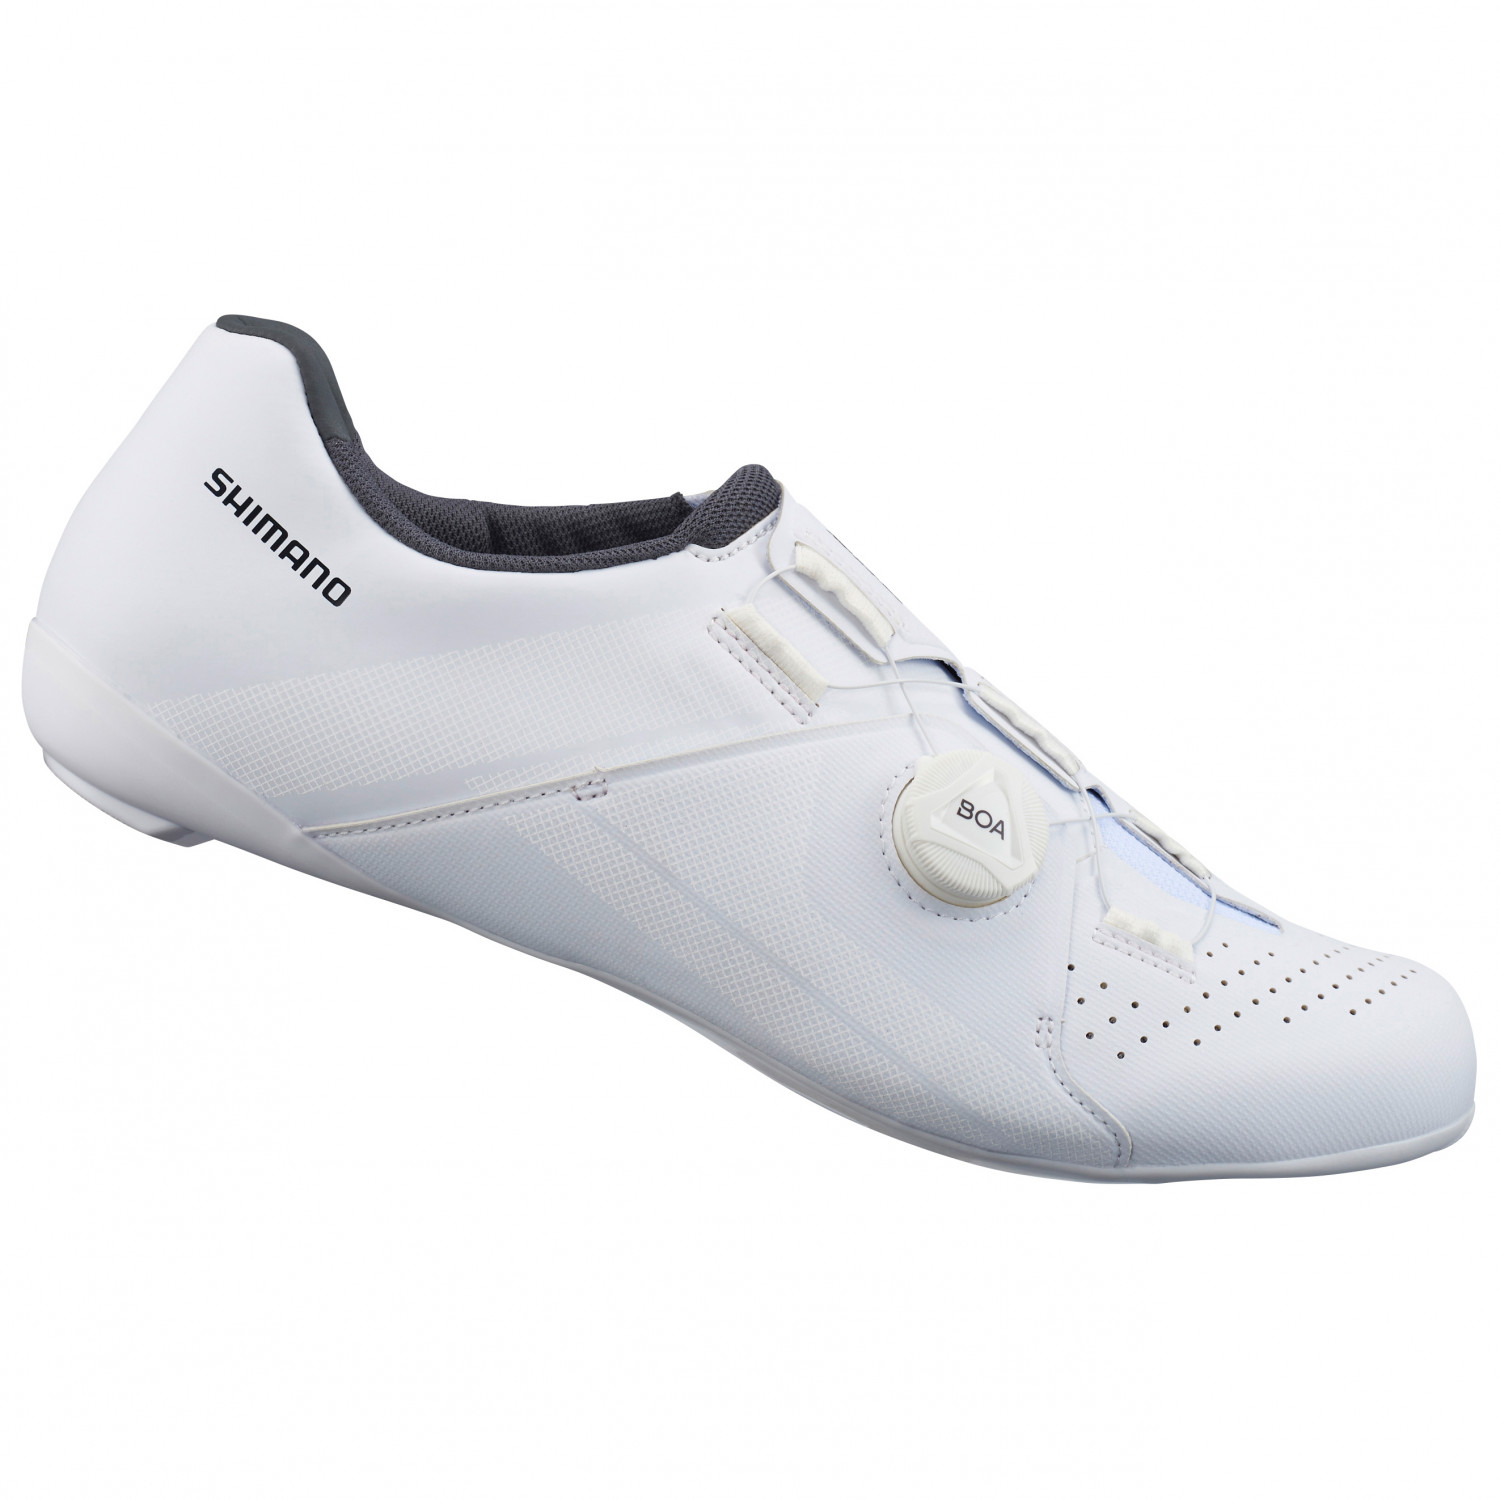 Велосипедная обувь Shimano SH RC3 Road Comp Schuhe, белый